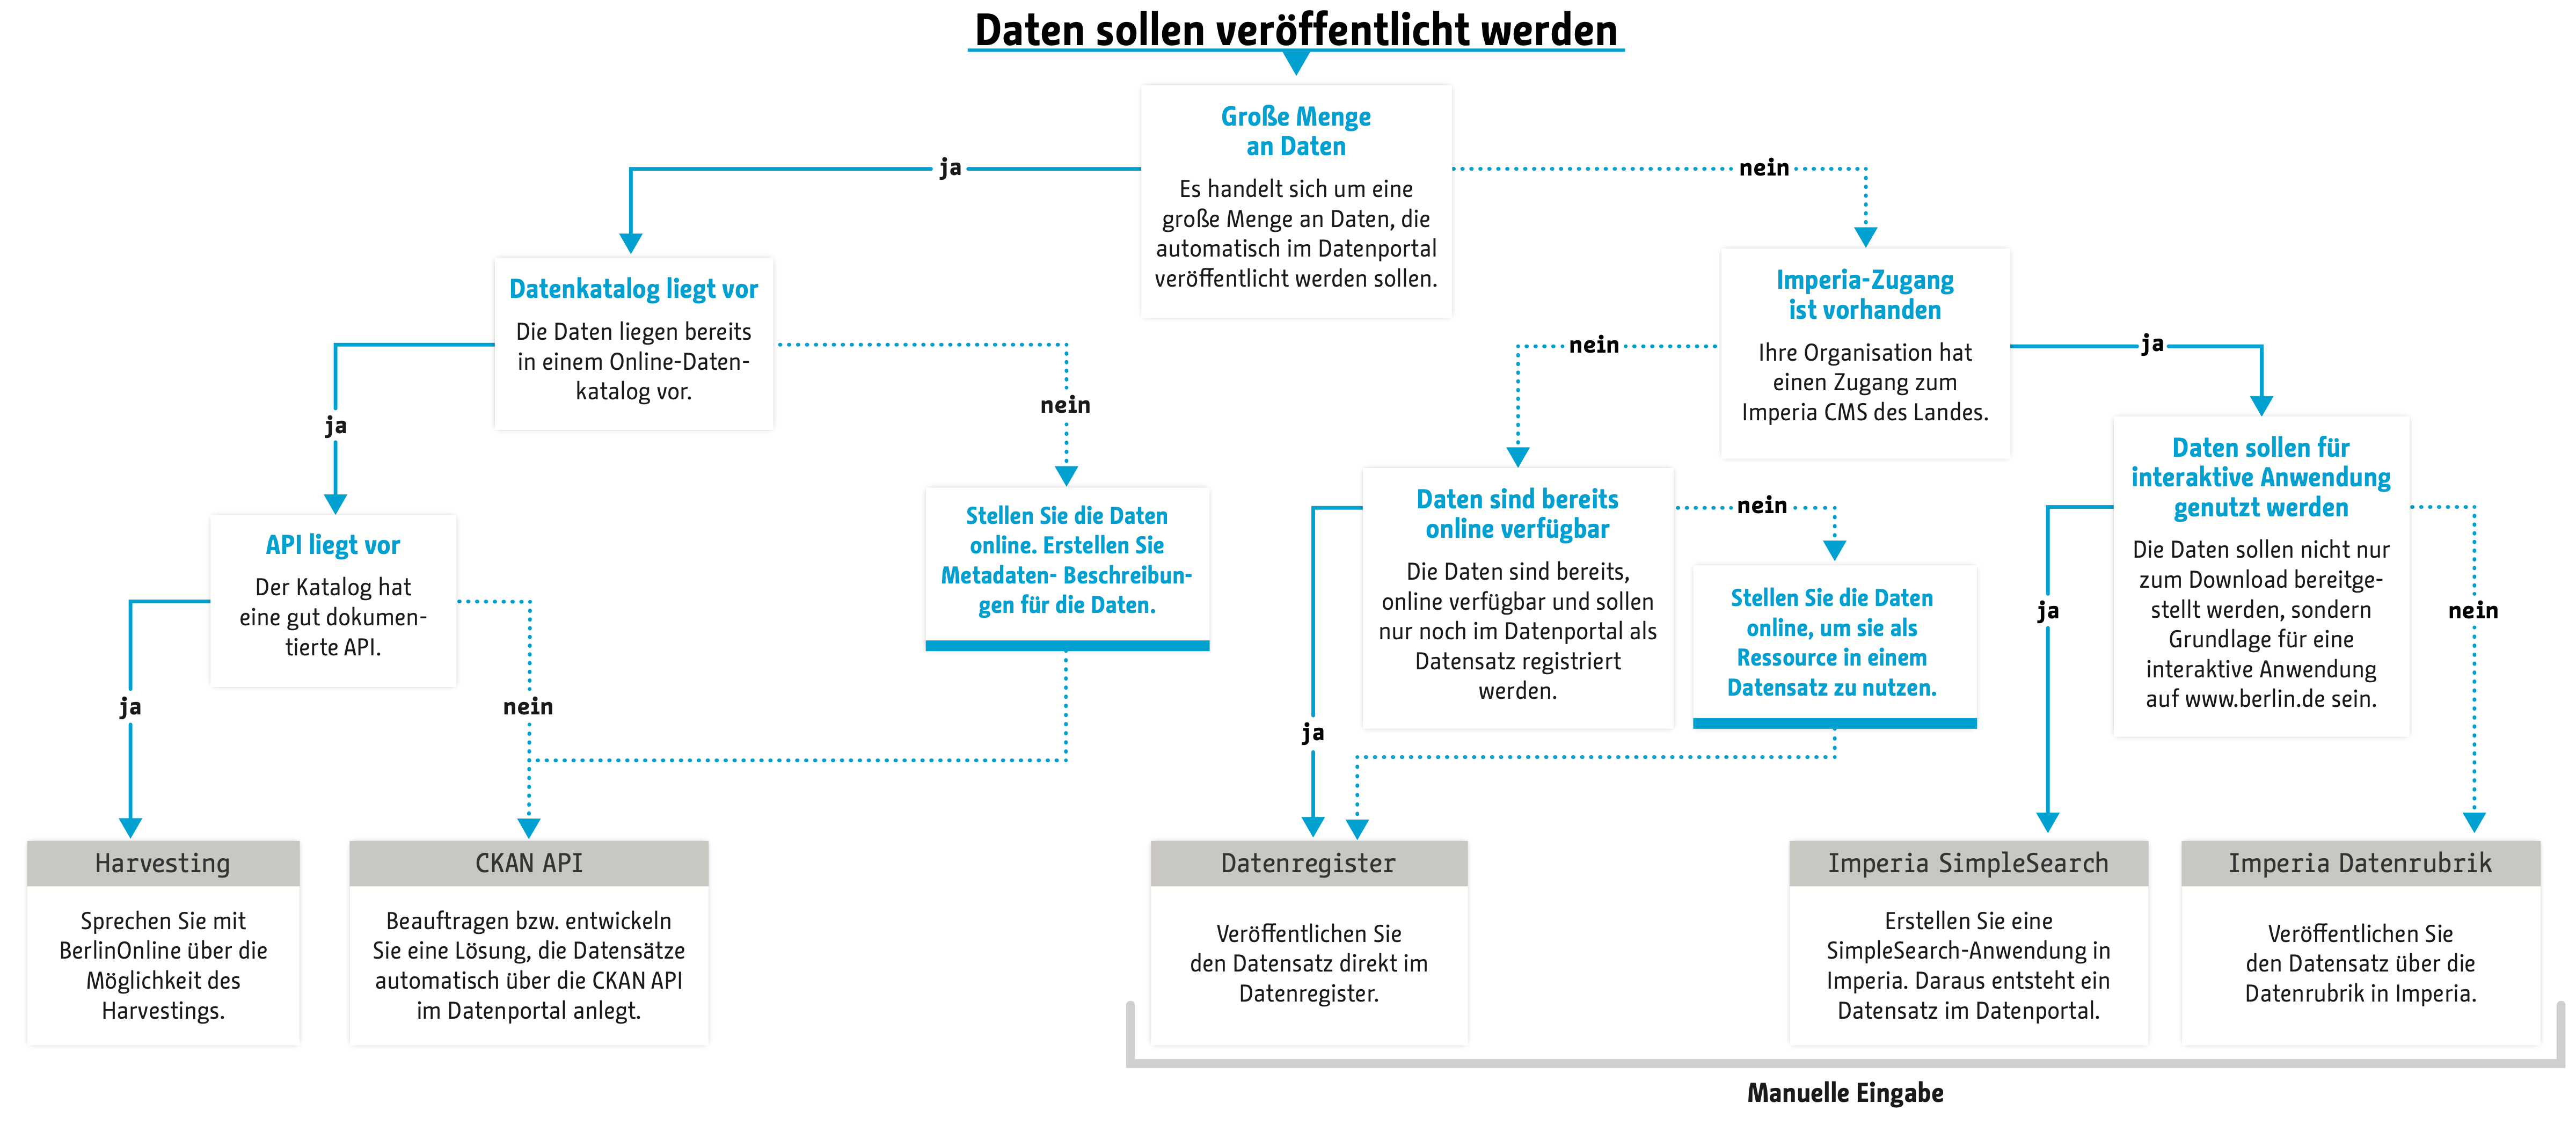 Flussdiagramm zur Auswahl eines Veröffentlichungsweges für das Berliner Datenportal